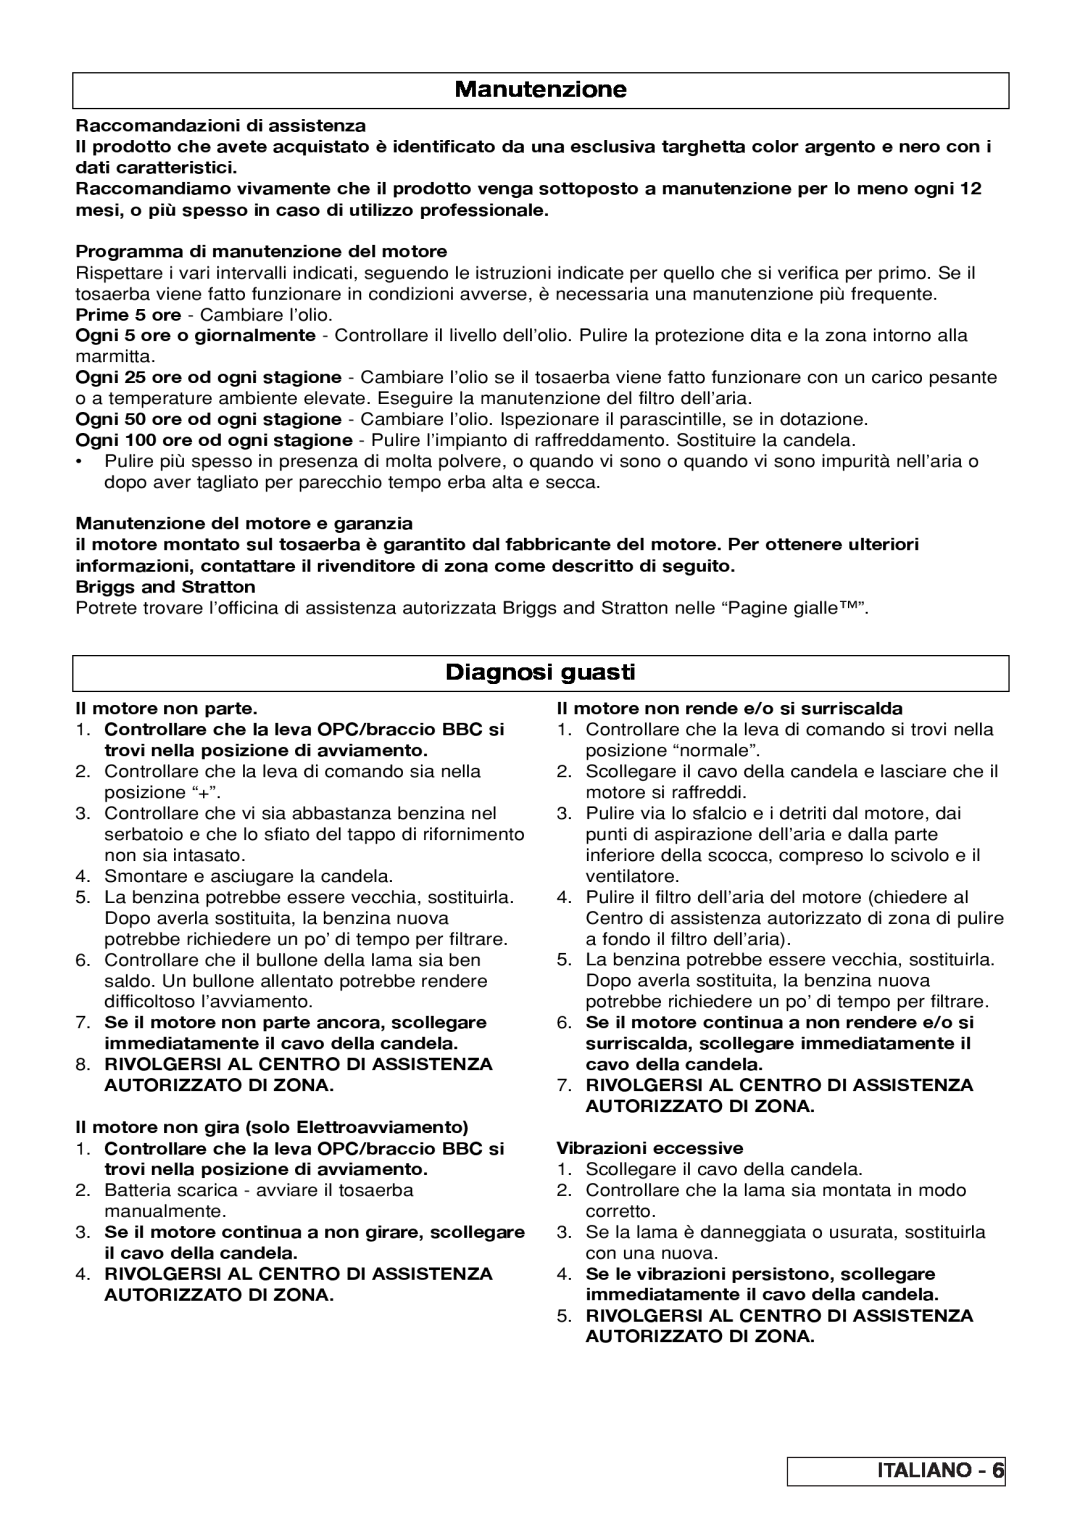 Husqvarna R 50S / BBC, R 50SE manual Manutenzione, Diagnosi guasti, Italiano 